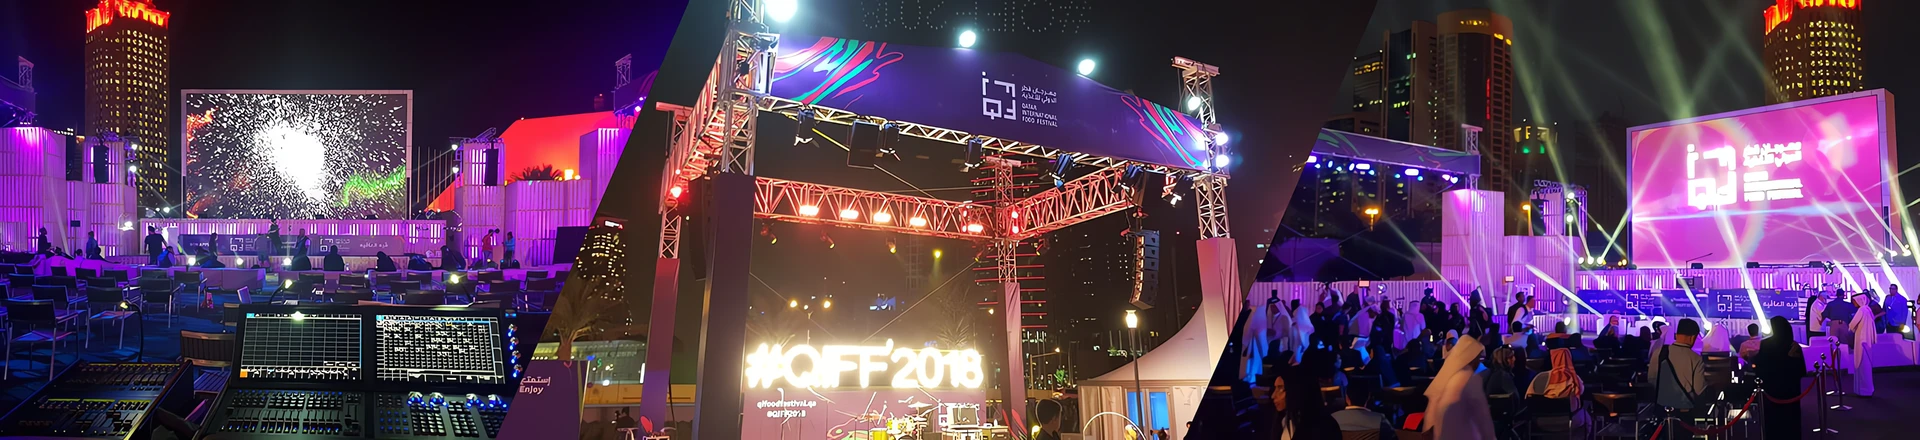 ChamSys na Qatar International Food Festival 2018